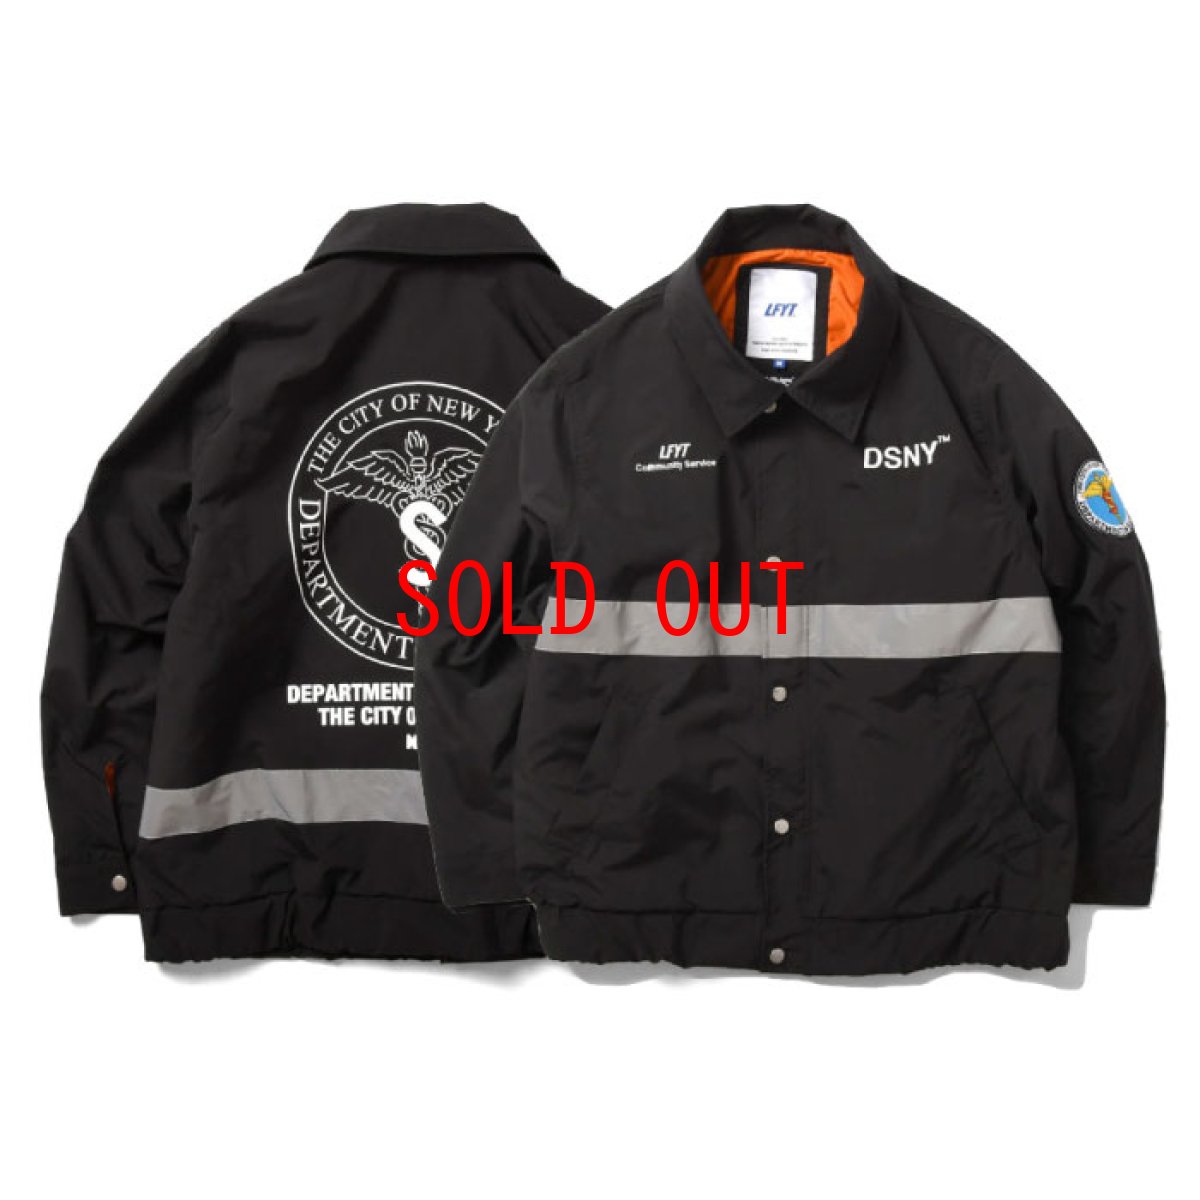 画像1: X DSNY Community Services Worker Jacket 刺繍 オフィシャル ロゴ ユニフォーム リフレクター ジャケット Black ブラック by Lafayette ラファイエット  (1)